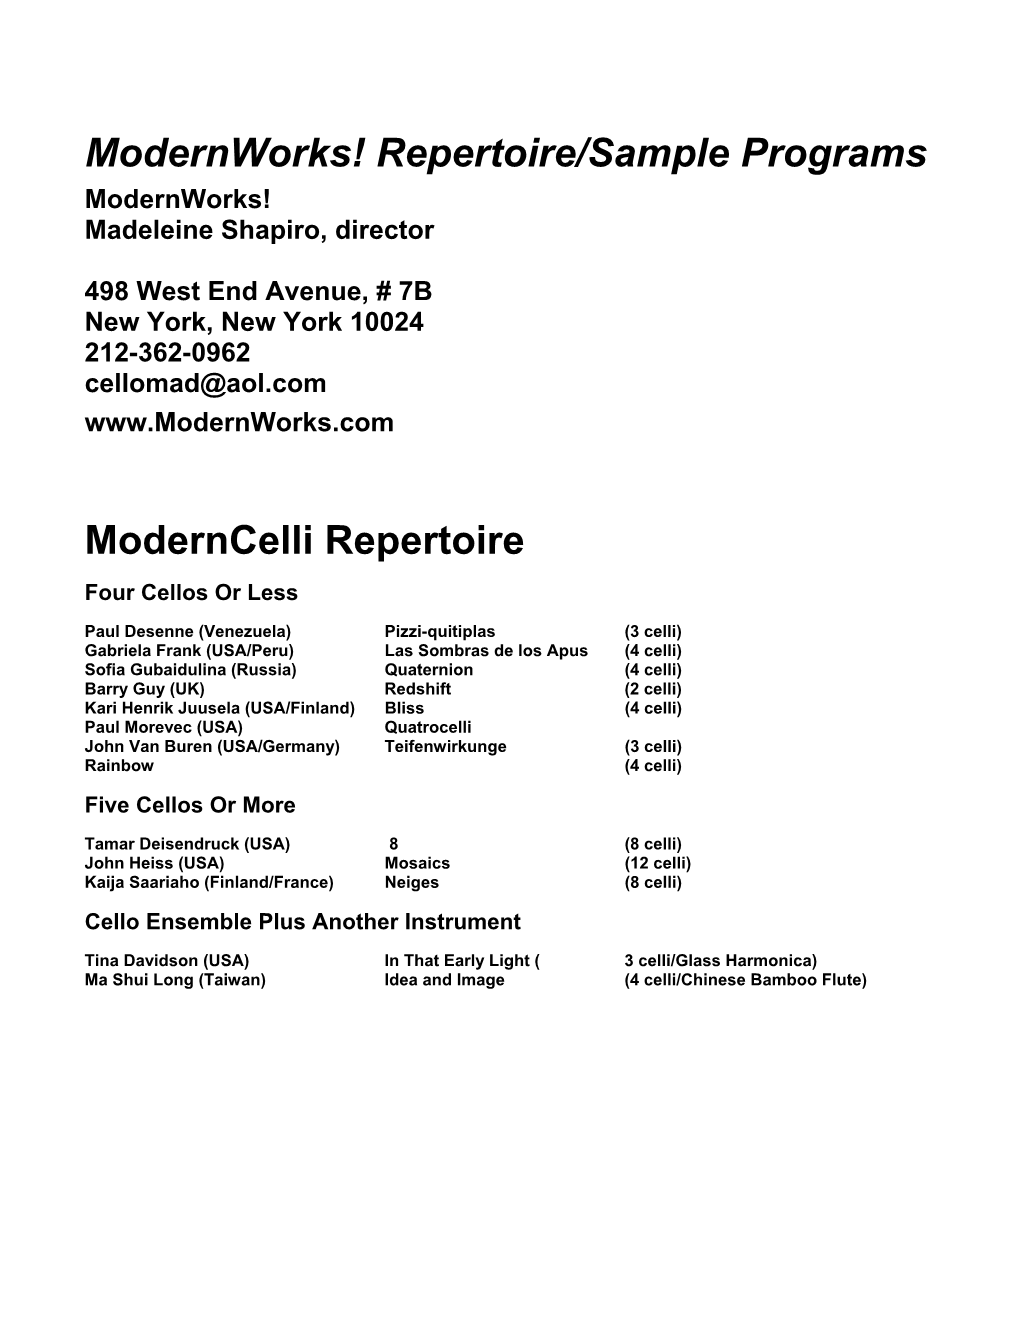 Modernworks! Repertoire/Sample Programs Moderncelli Repertoire